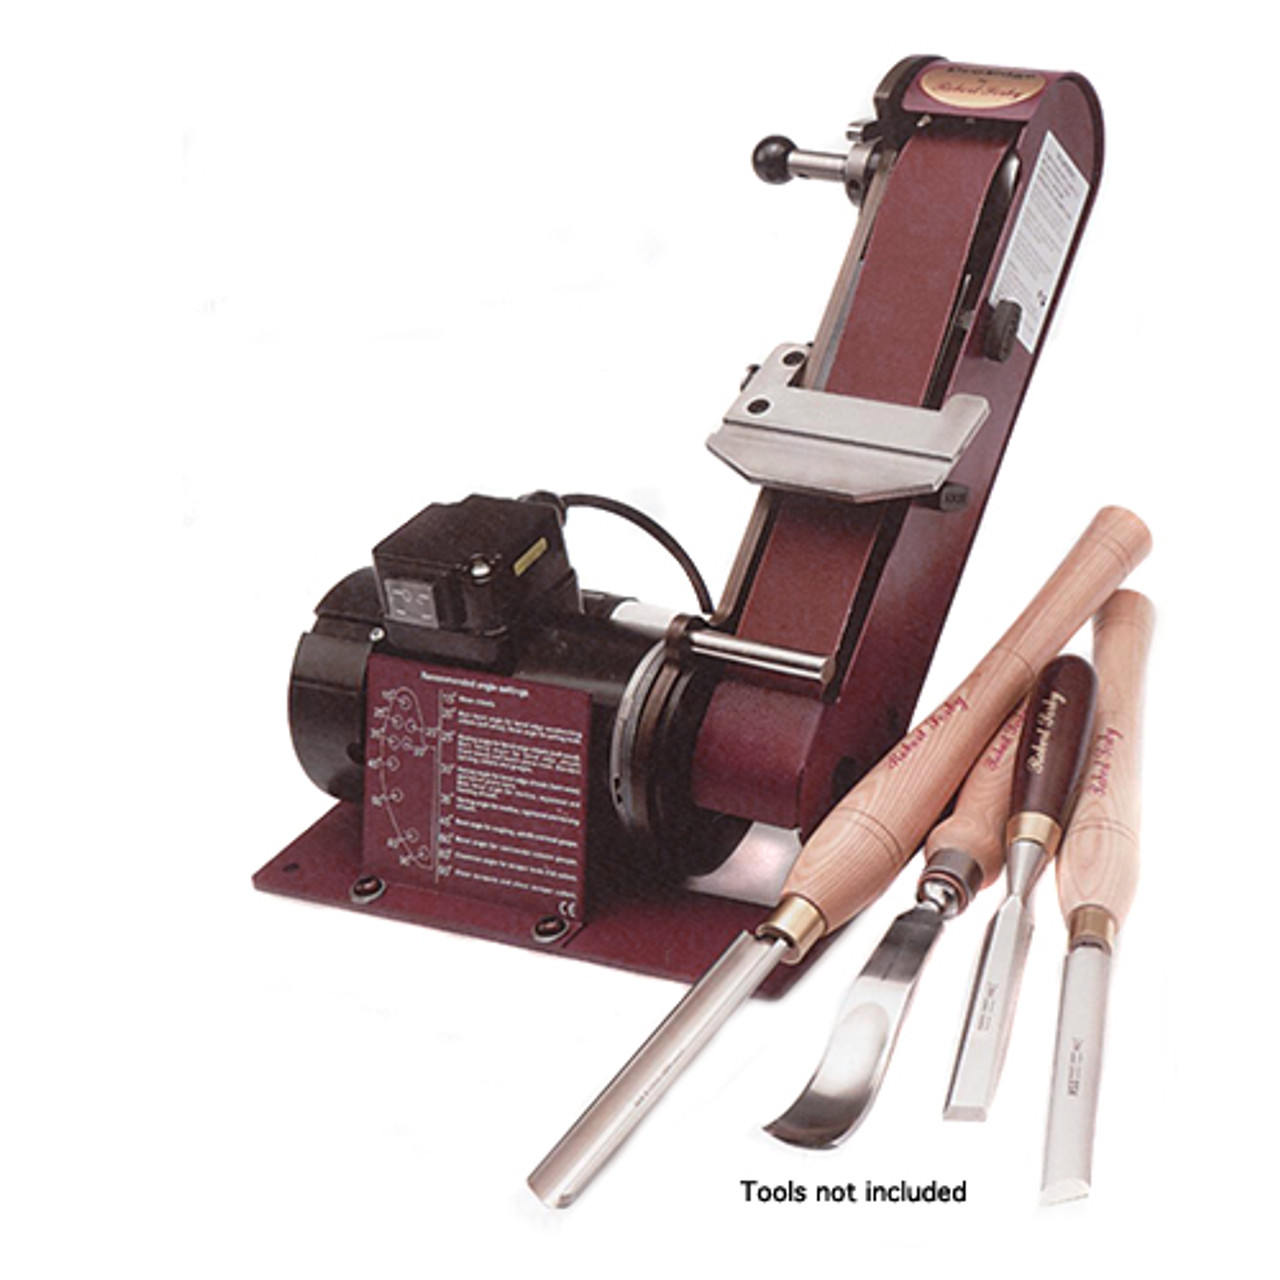 Pro Grind Sharpening System for Lathe Turning Tools, Chisels, Skews, Gouges, Bow